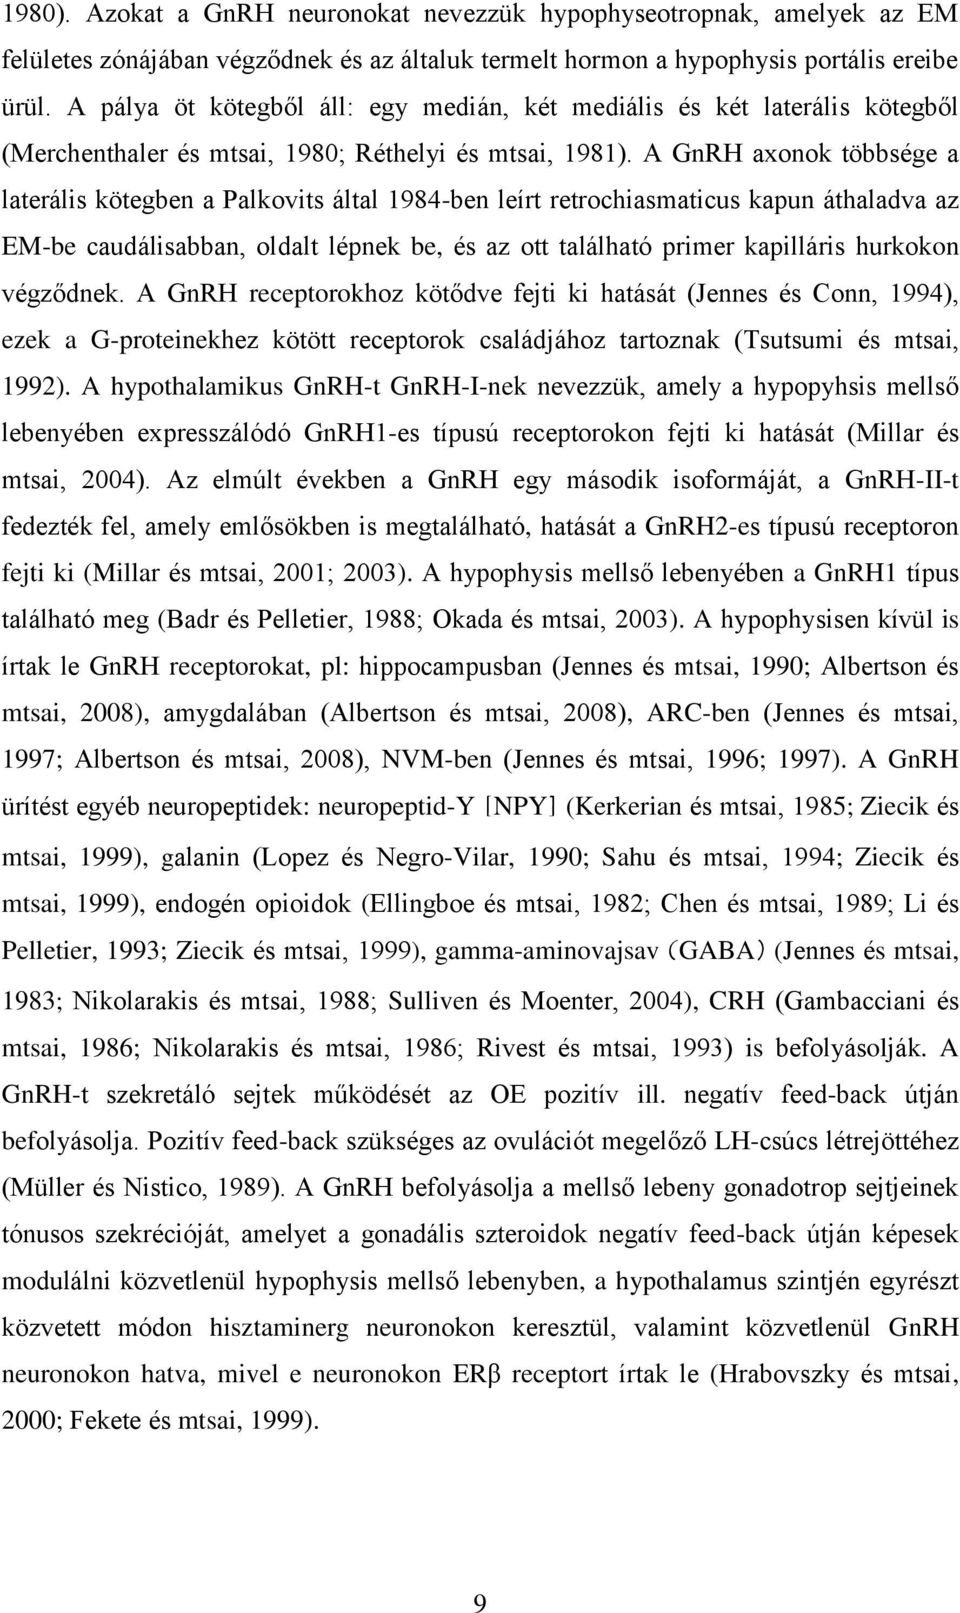 A GnRH axonok többsége a laterális kötegben a Palkovits által 1984-ben leírt retrochiasmaticus kapun áthaladva az EM-be caudálisabban, oldalt lépnek be, és az ott található primer kapilláris hurkokon